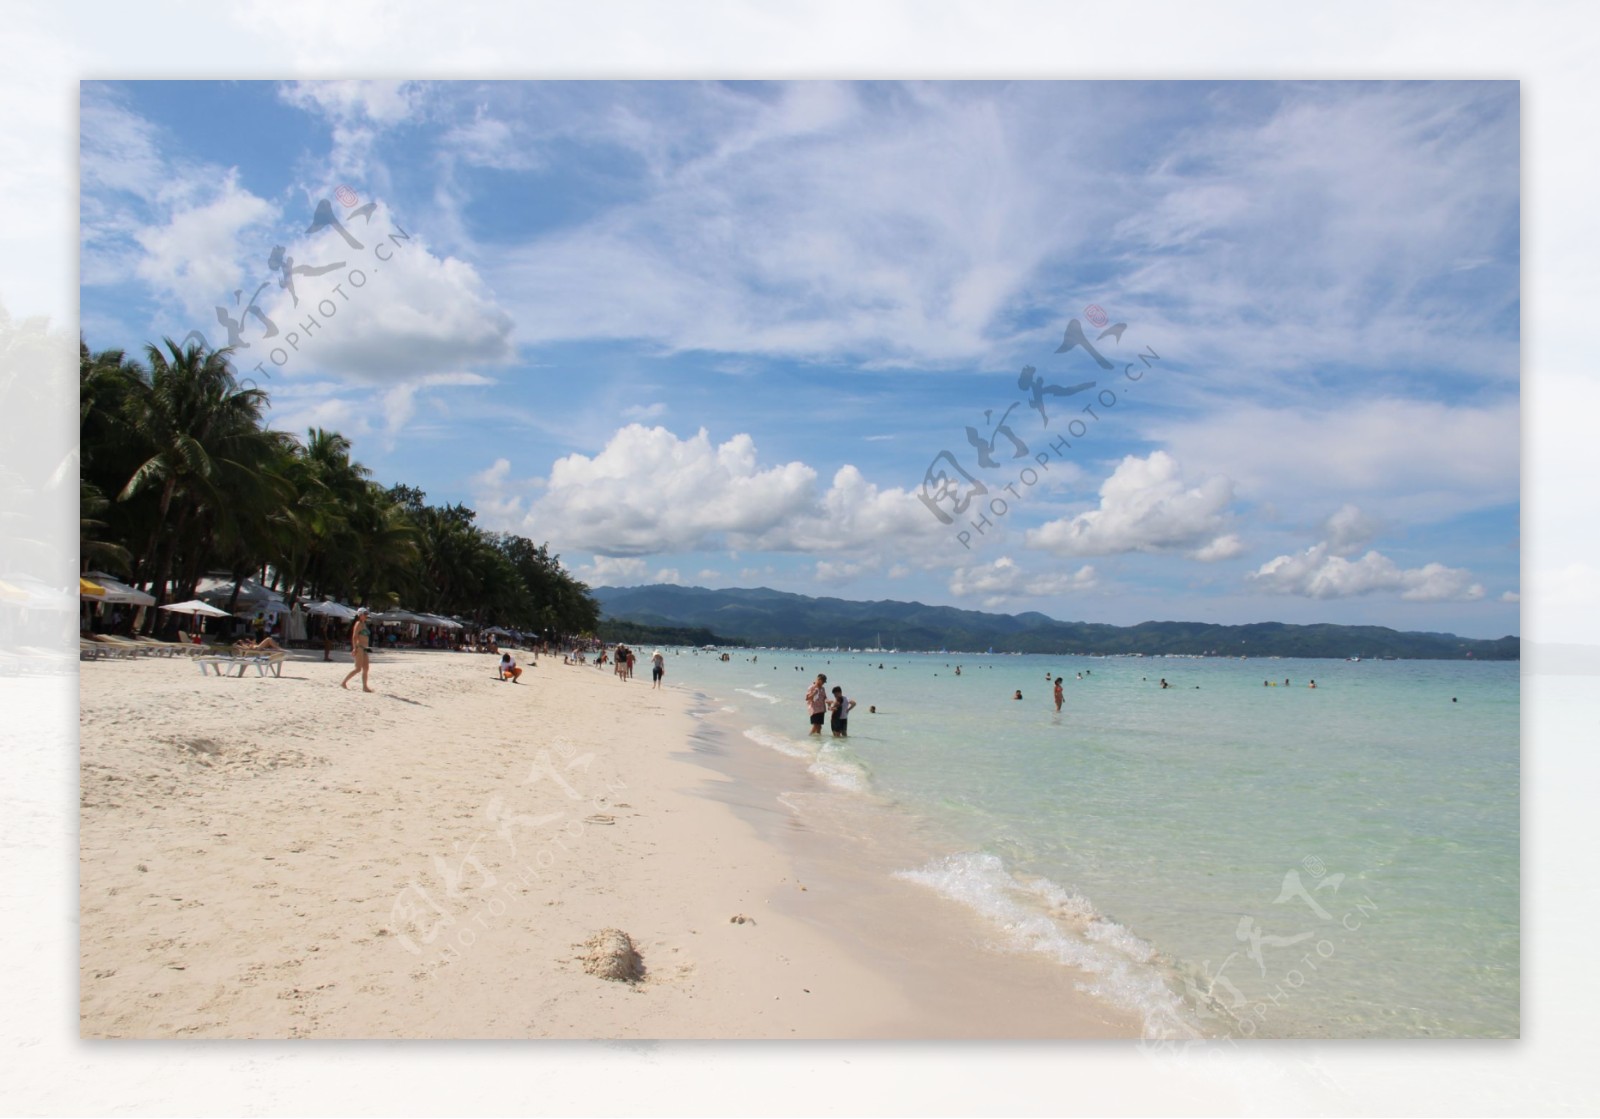 菲律宾长滩岛白沙滩图片